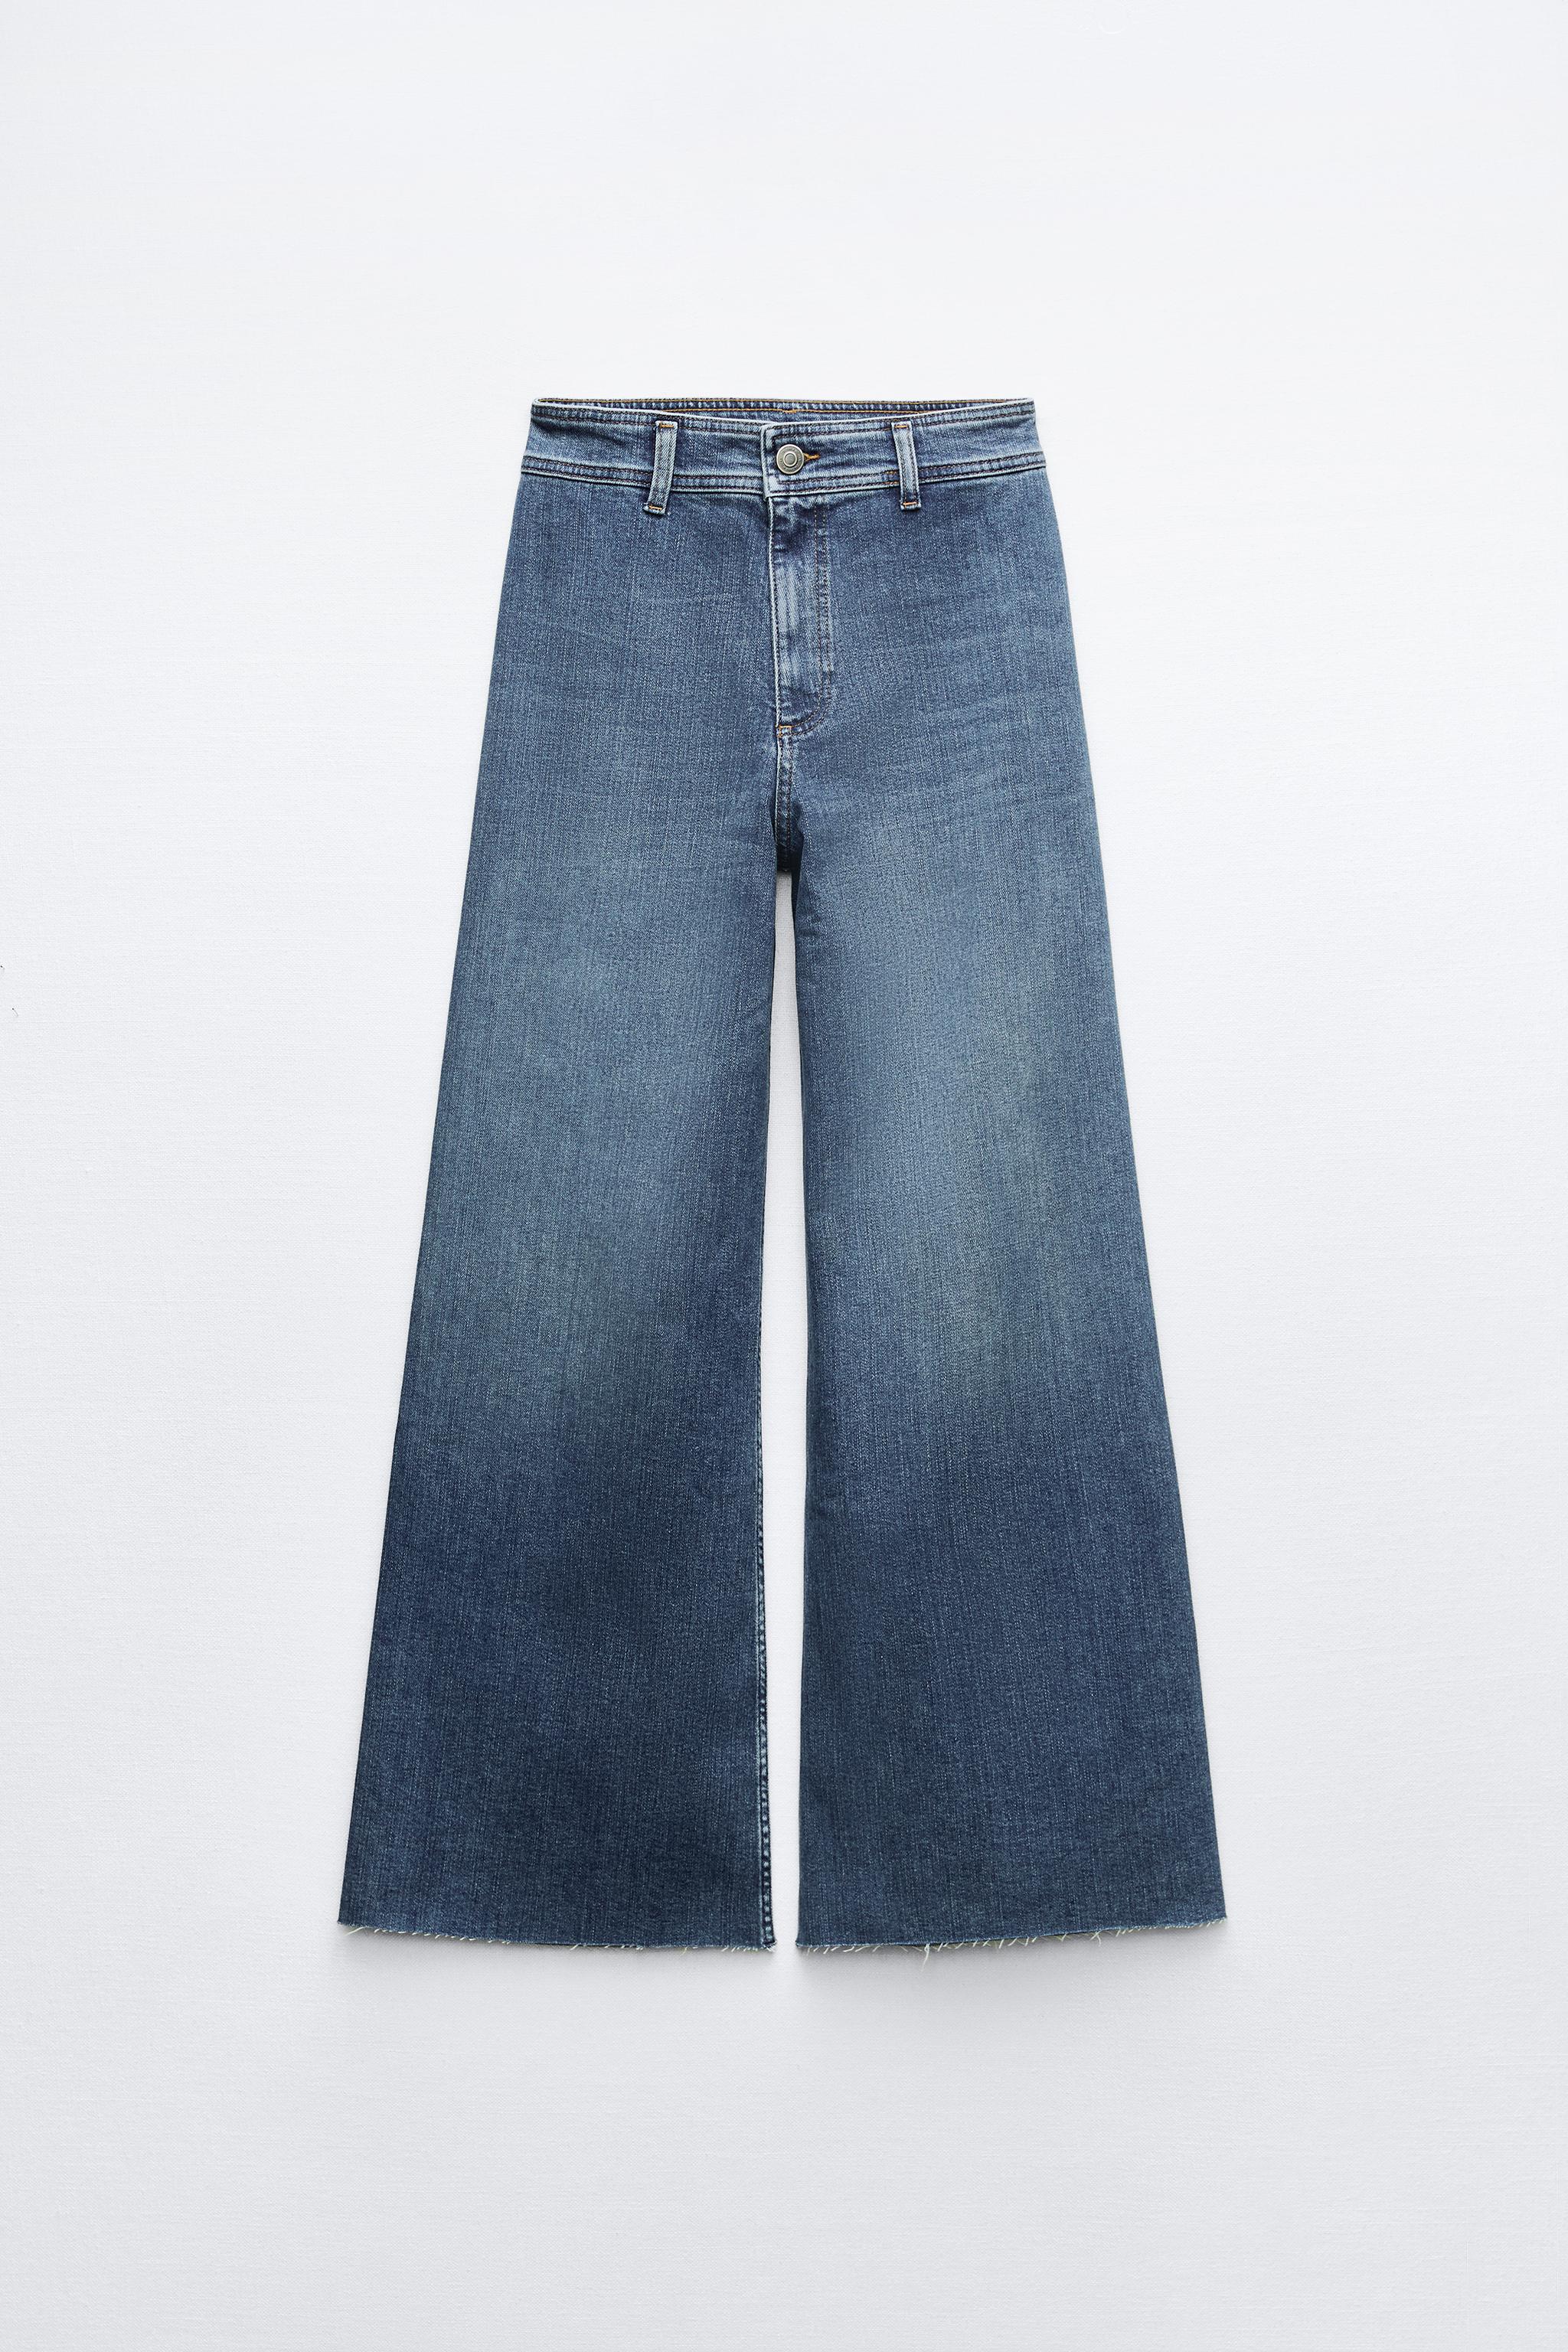 2020 personalizado de talle alto cinturón mujer jeans pantalones vaqueros  mujeres denim señoras bootcut plus tamaño pantalones y jeans